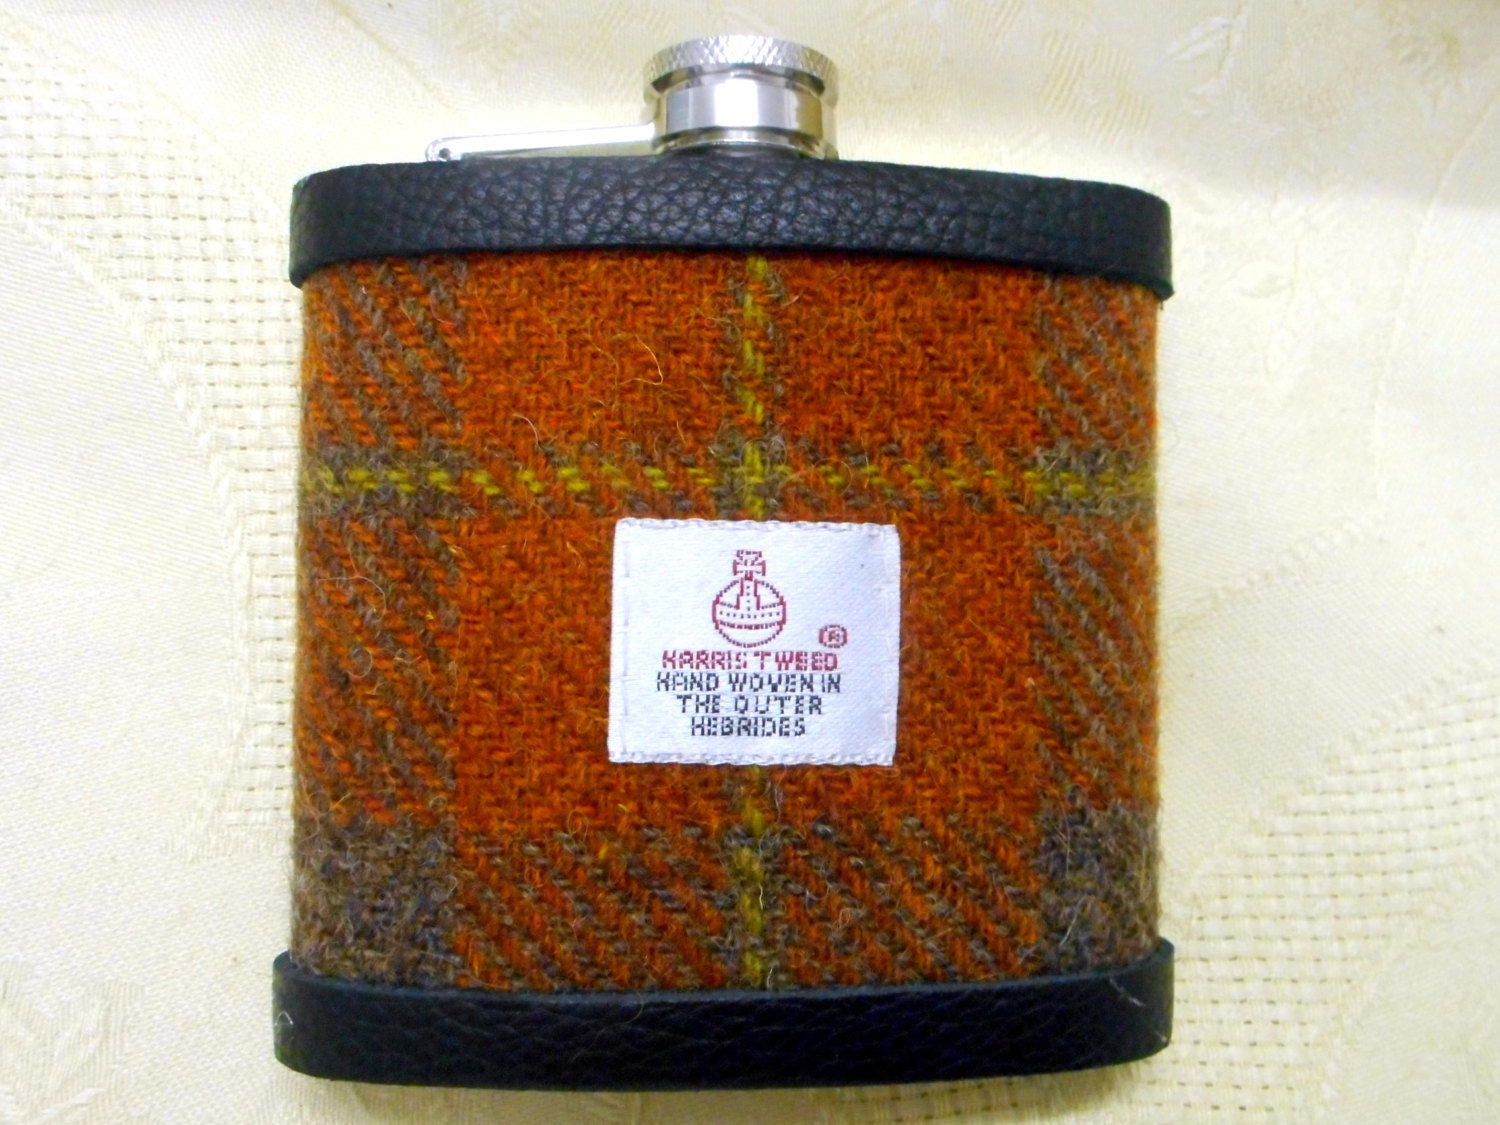 Harris Tweed hip flask russet brown green tartan luxury Scottish gift